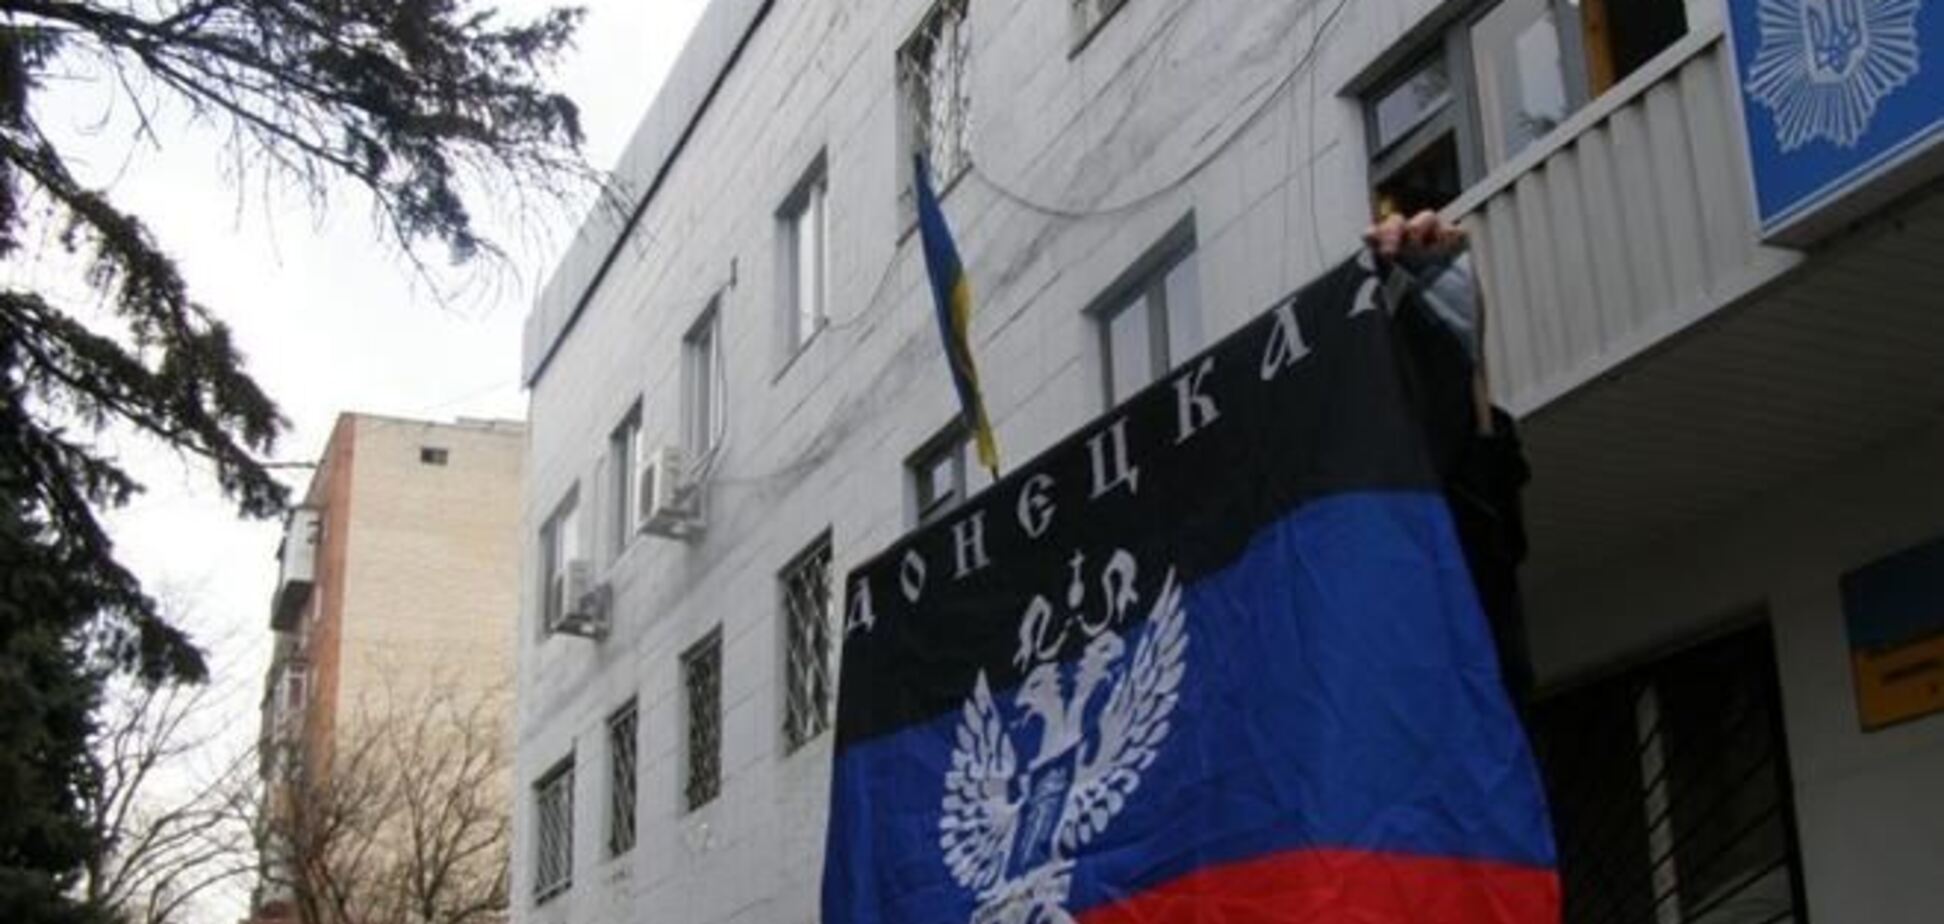 Над міськвідділом міліції Красноармійська вивісили прапор 'Донецької республіки'